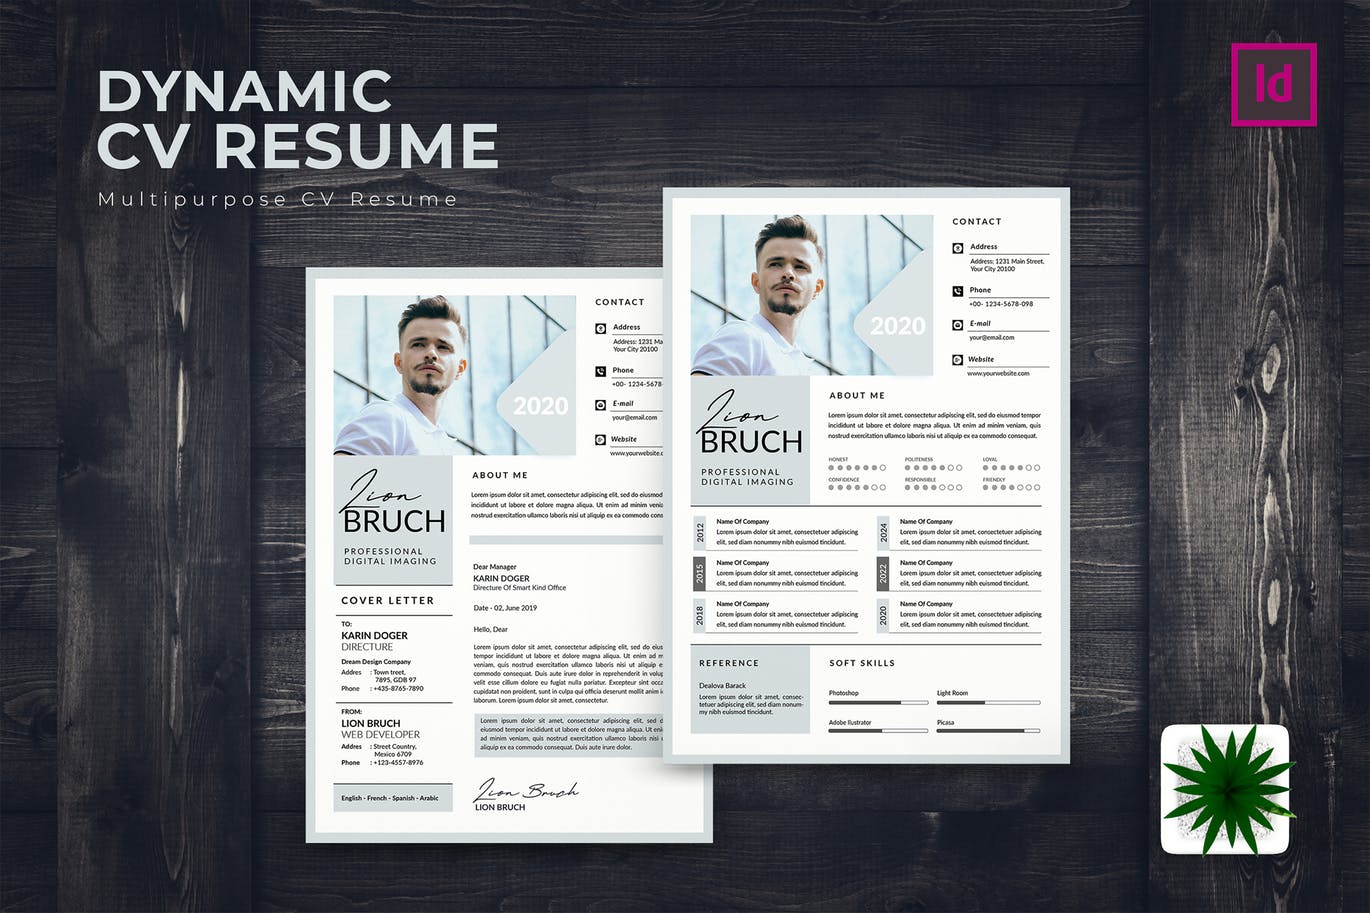 专业图形设计师电子大洋岛精选简历模板 Dynamic CV Resume插图